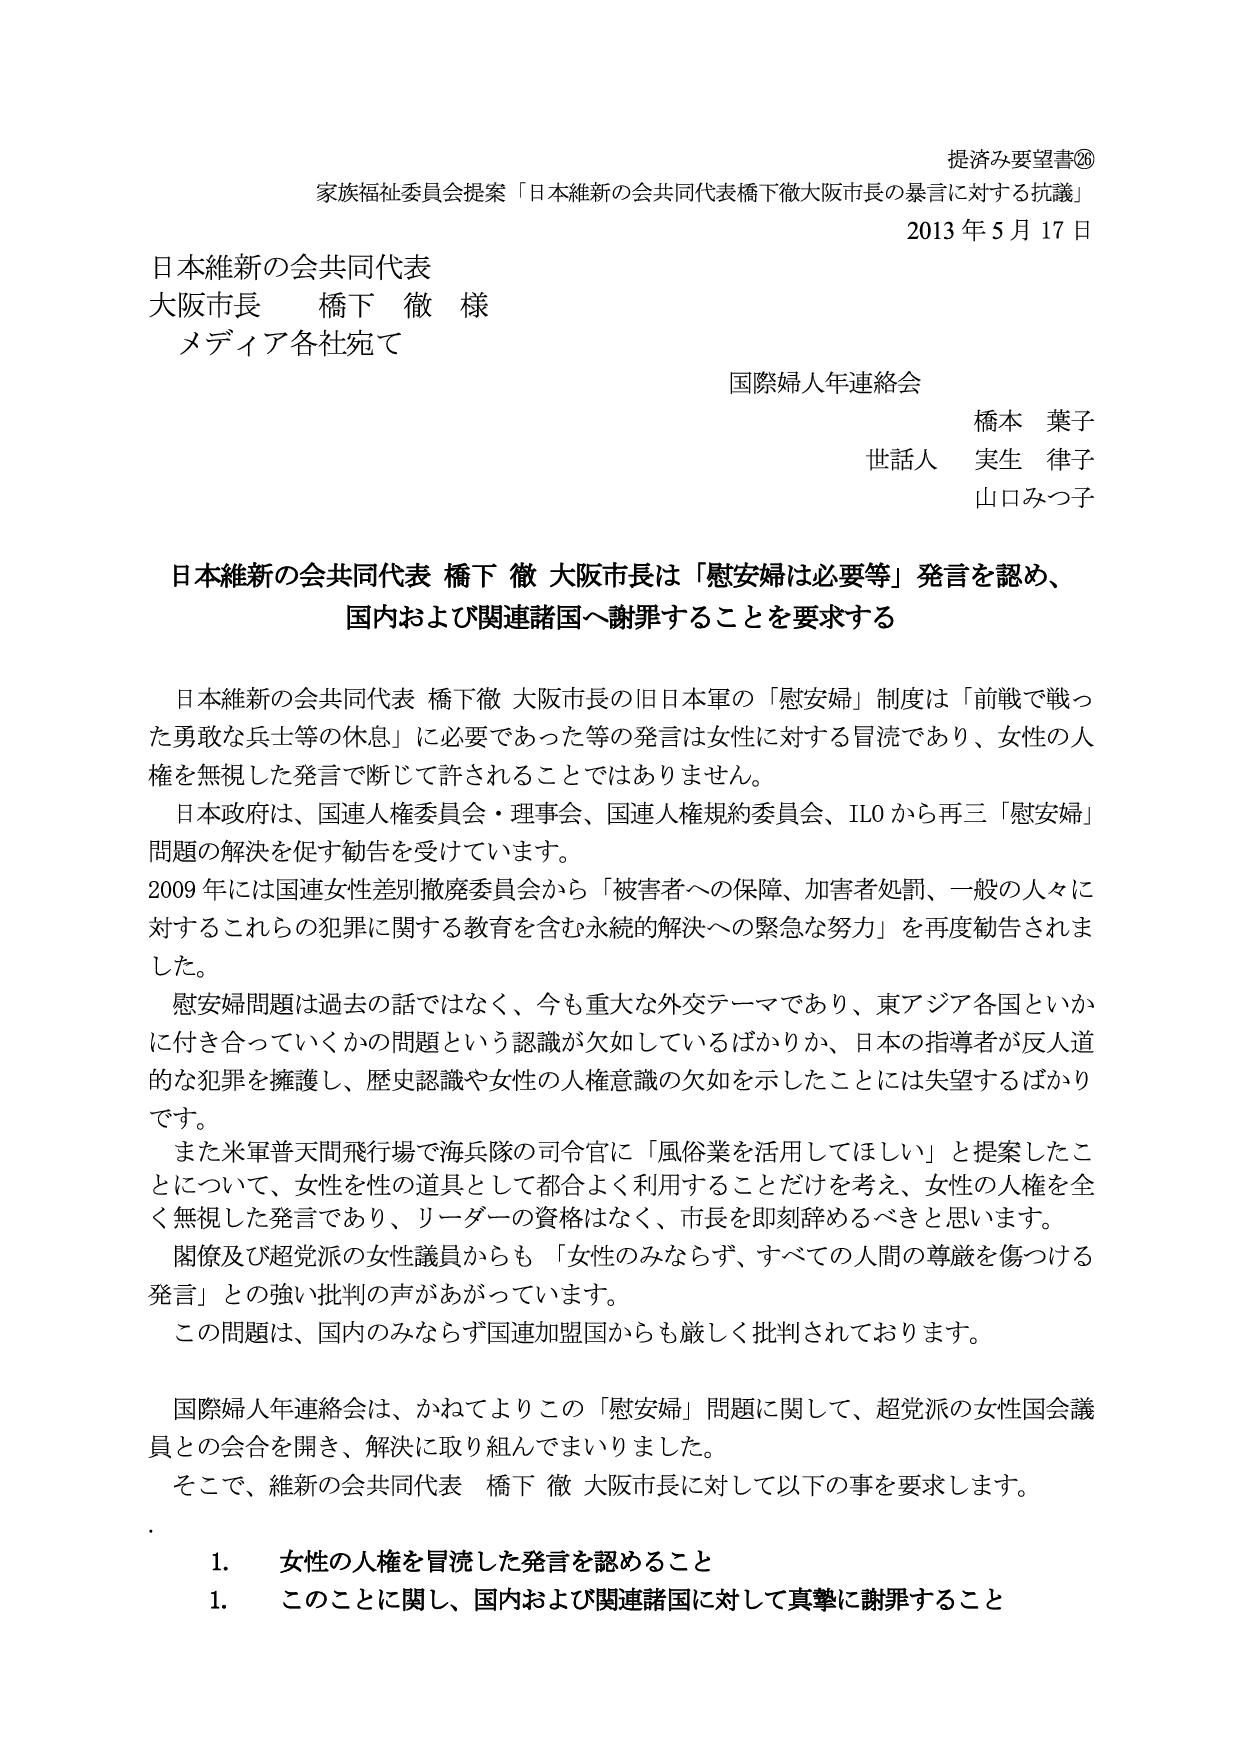 提出済み要望書26家族福祉委員会提案「橋下徹大阪市長の暴言に対する抗議」